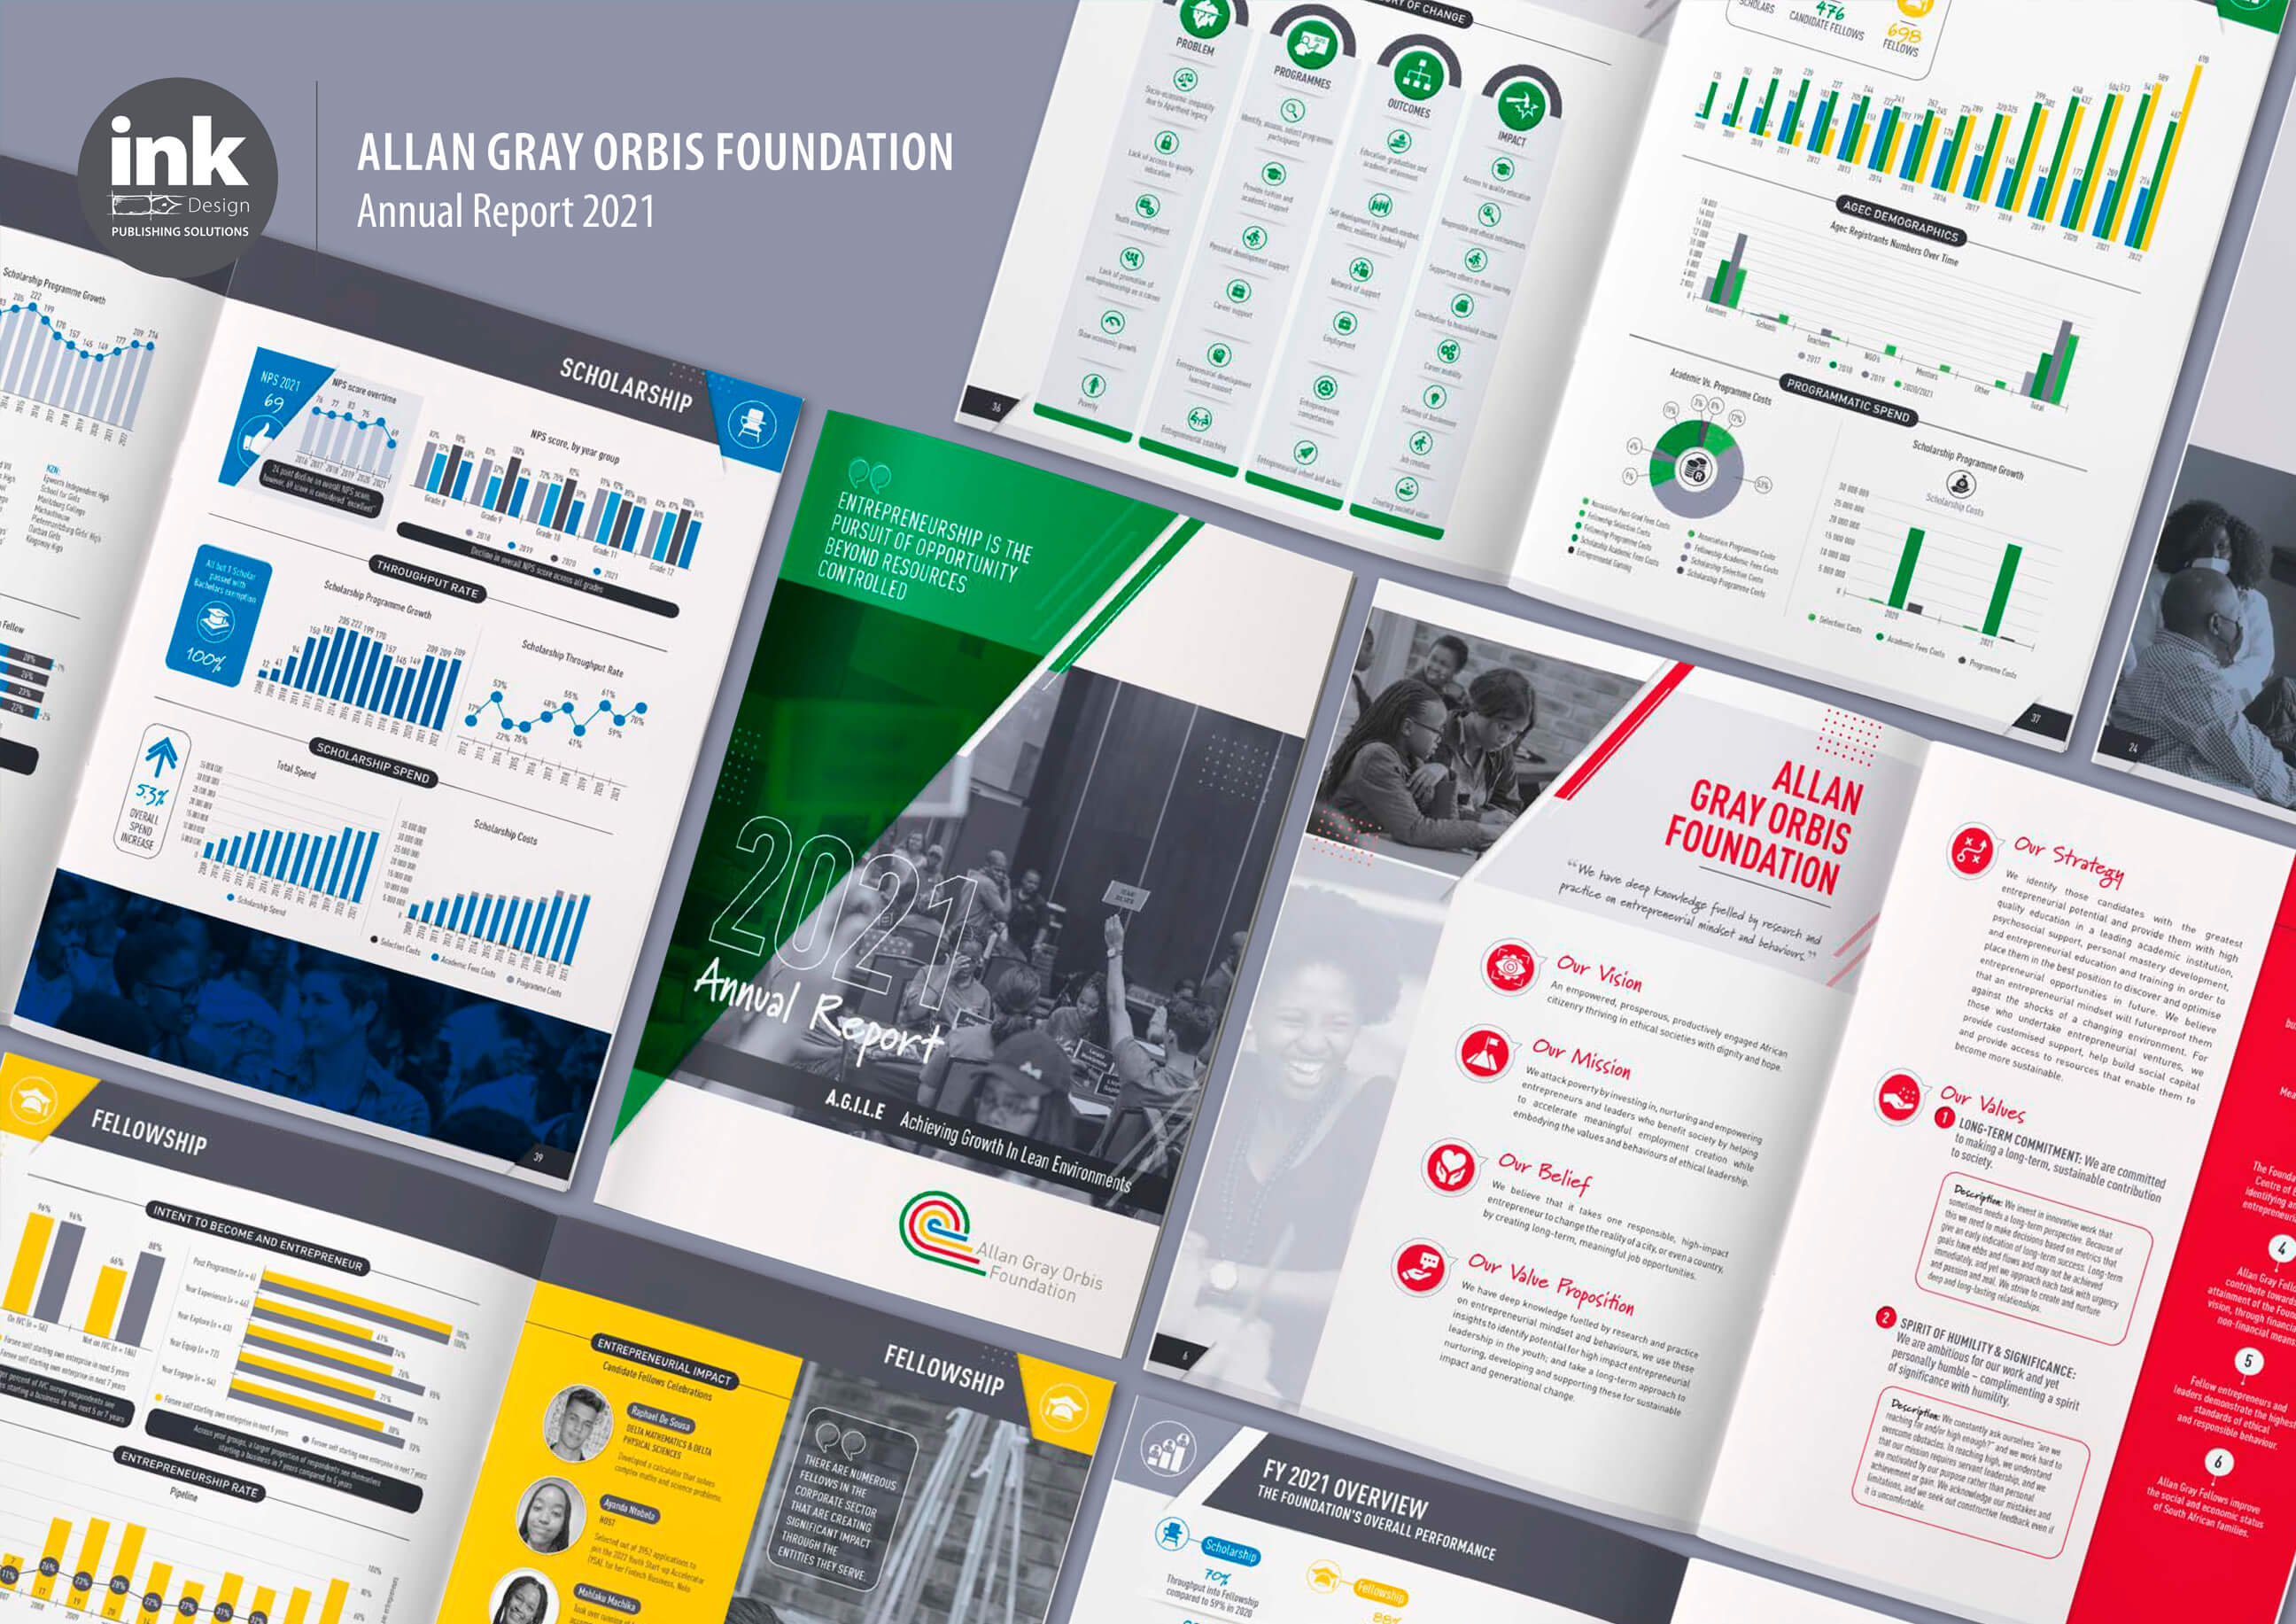 Allan Gray Orbis Foundation Annual Report